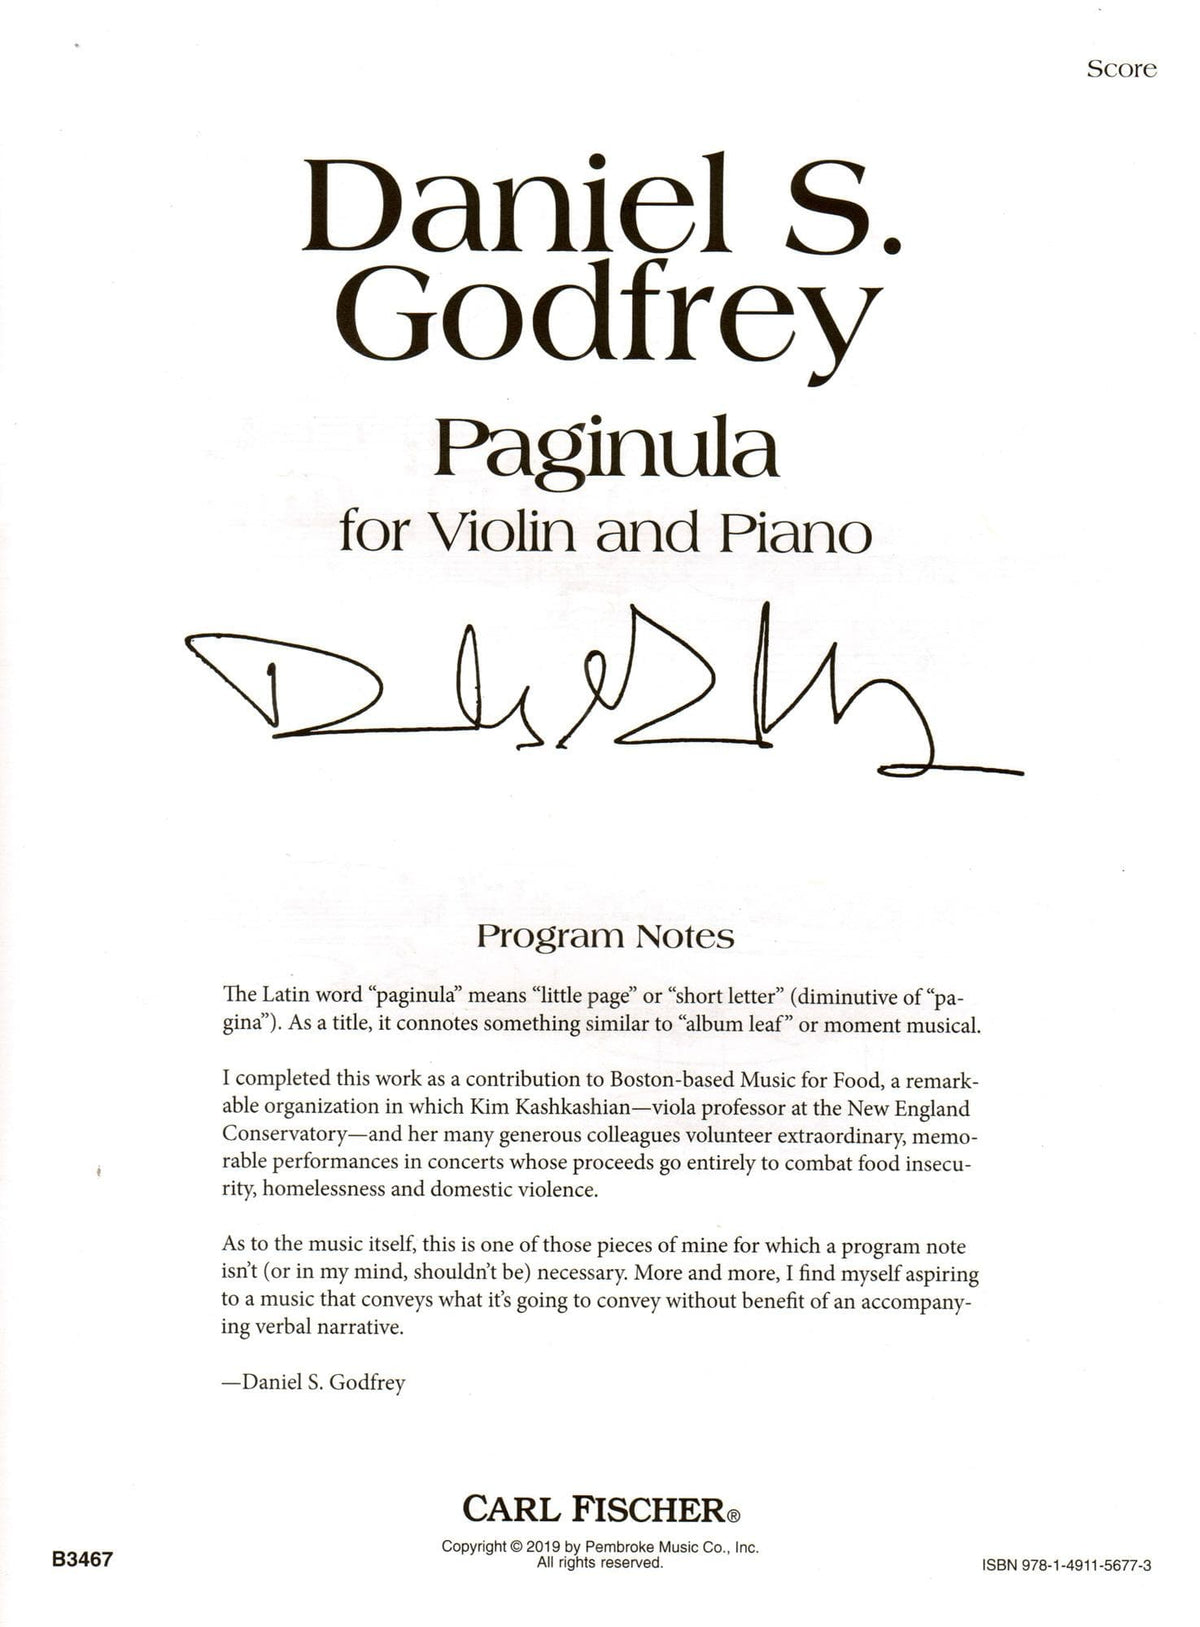 Godfrey, Daniel - Paginula - For Violin and Piano - Carl Fischer Edition